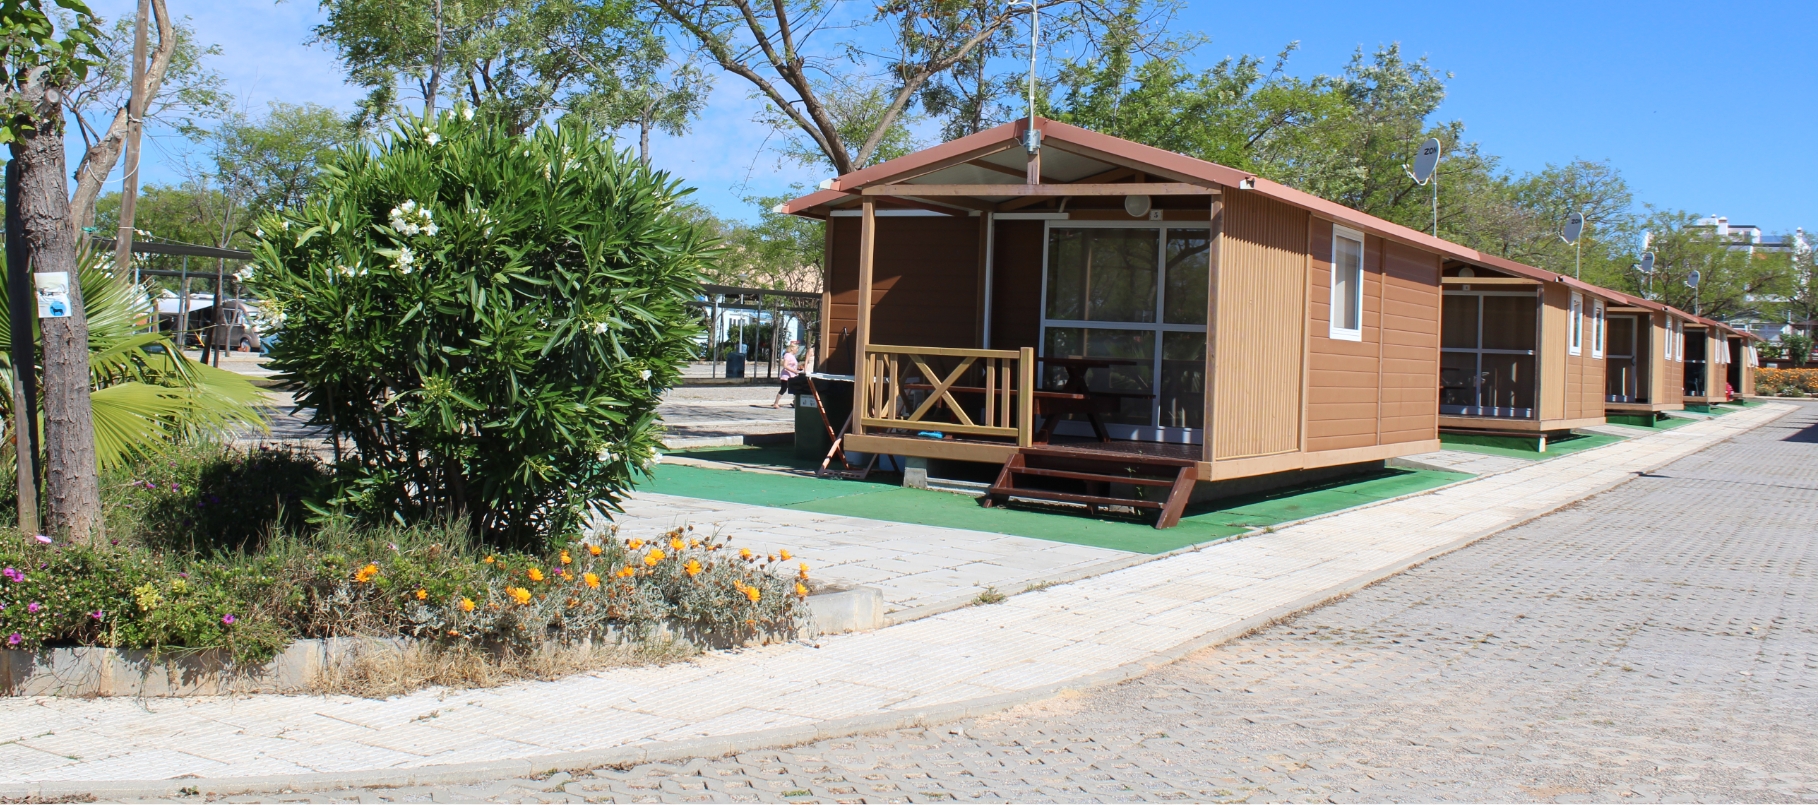 Gran camping y chalets de vacaciones en Tavira - Algarve